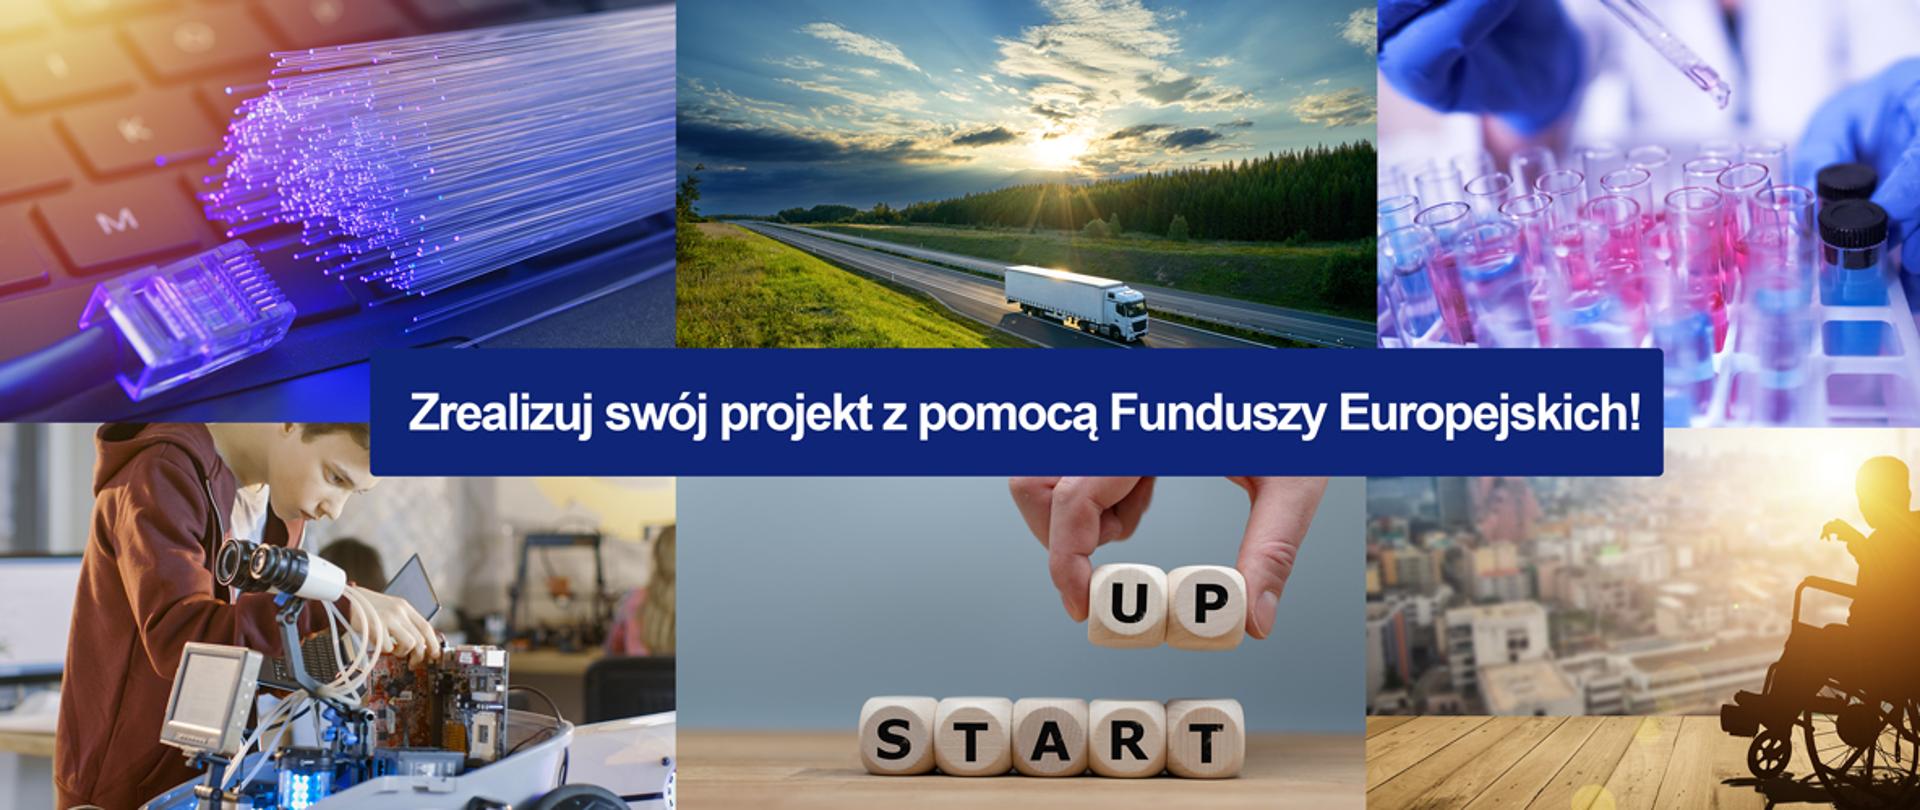 Kolaż zdjęć przedstawiających różne projekty możliwe do zrealizowania dzięki Funduszom Europejskim. Na środku napis Zrealizuj swój projekt z pomocą Funduszy Europejskich.